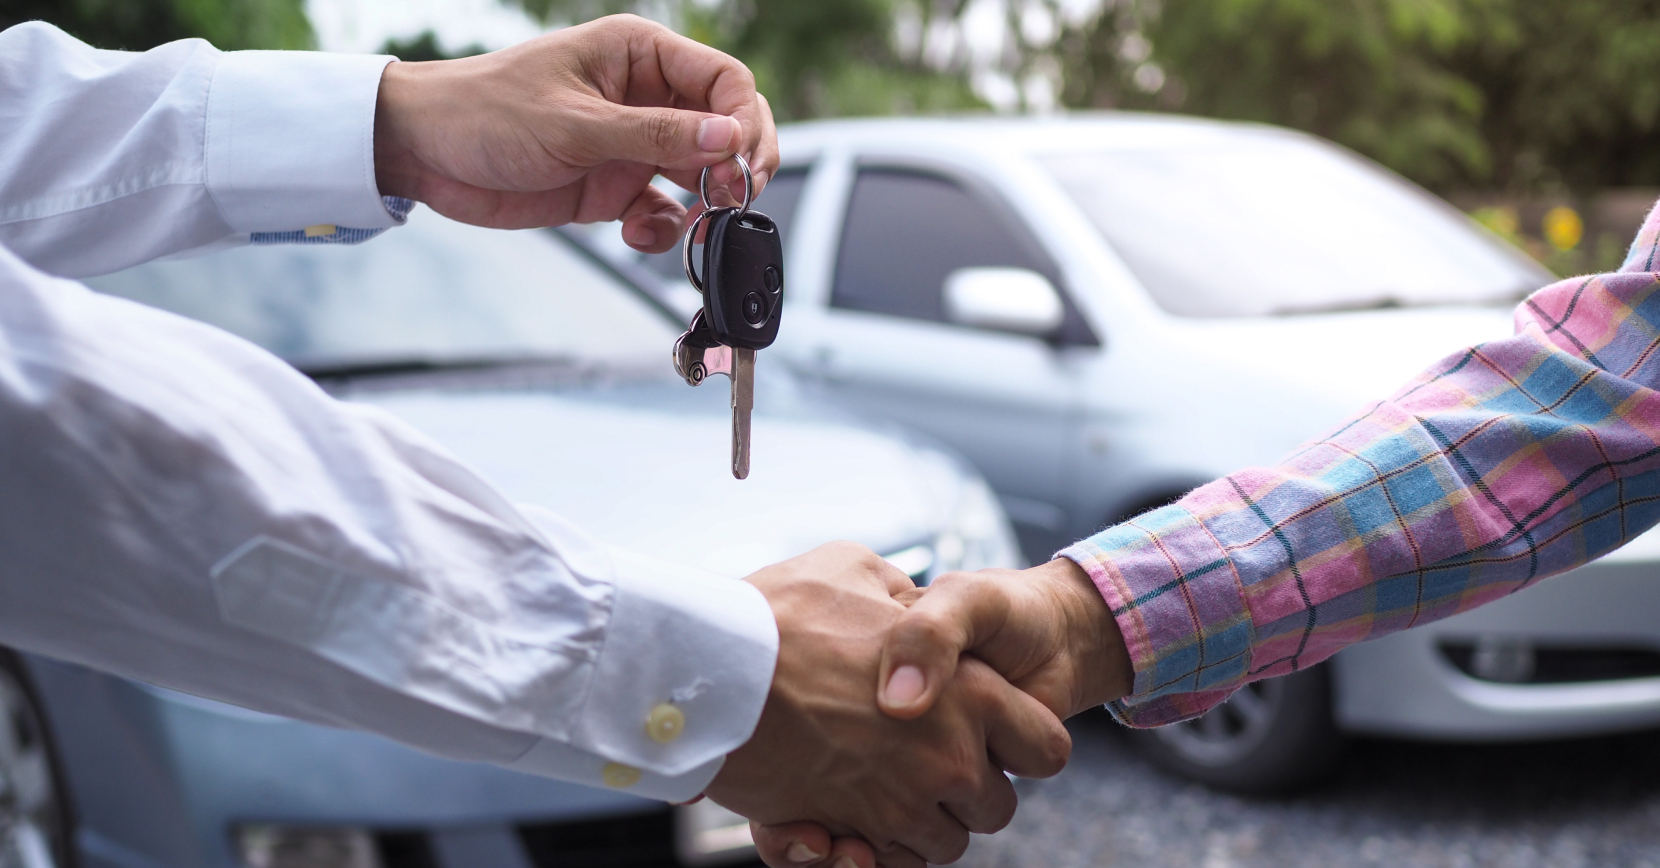 Renting automóvel: fica mais barato do que comprar carro?